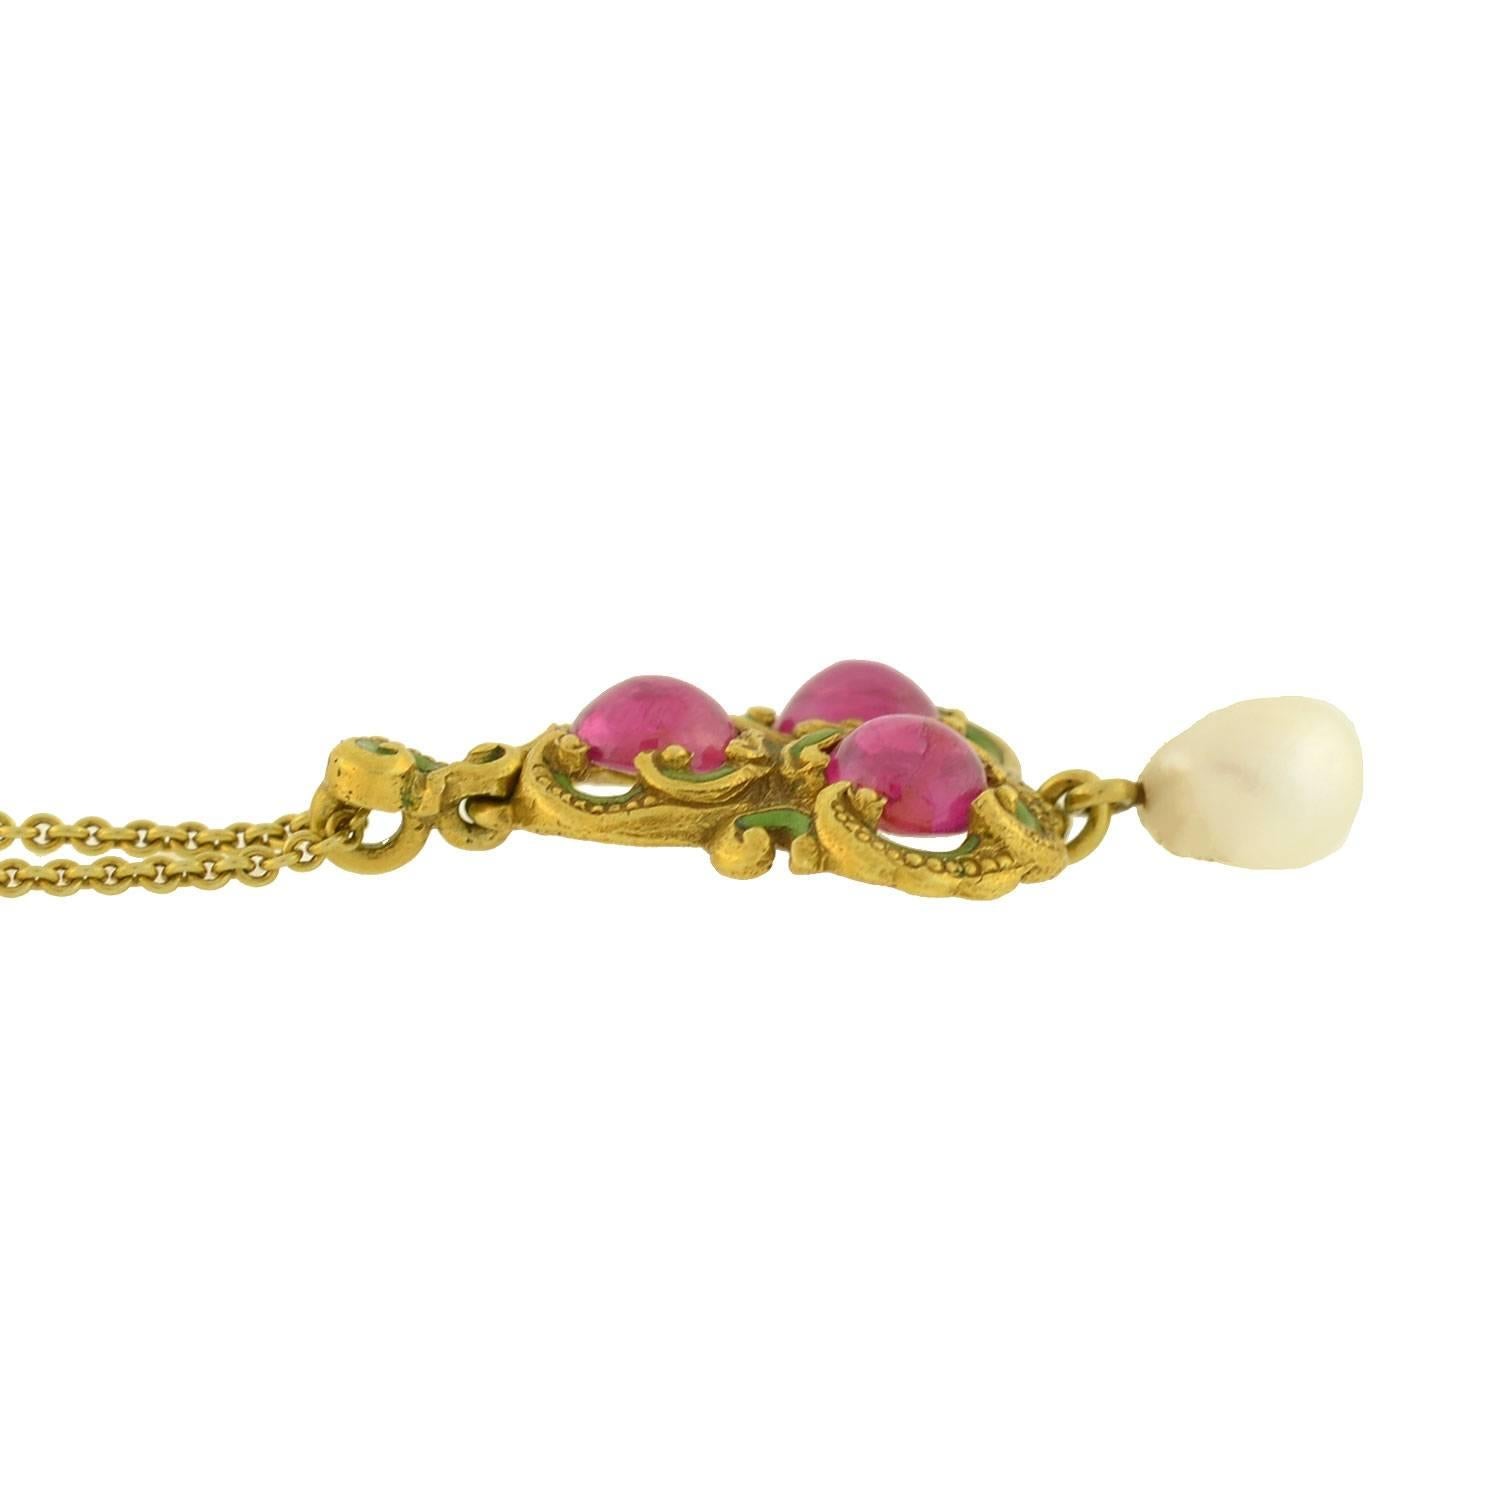 Women's Art Nouveau Natural Ruby Pearl Enameled Pendant Necklace